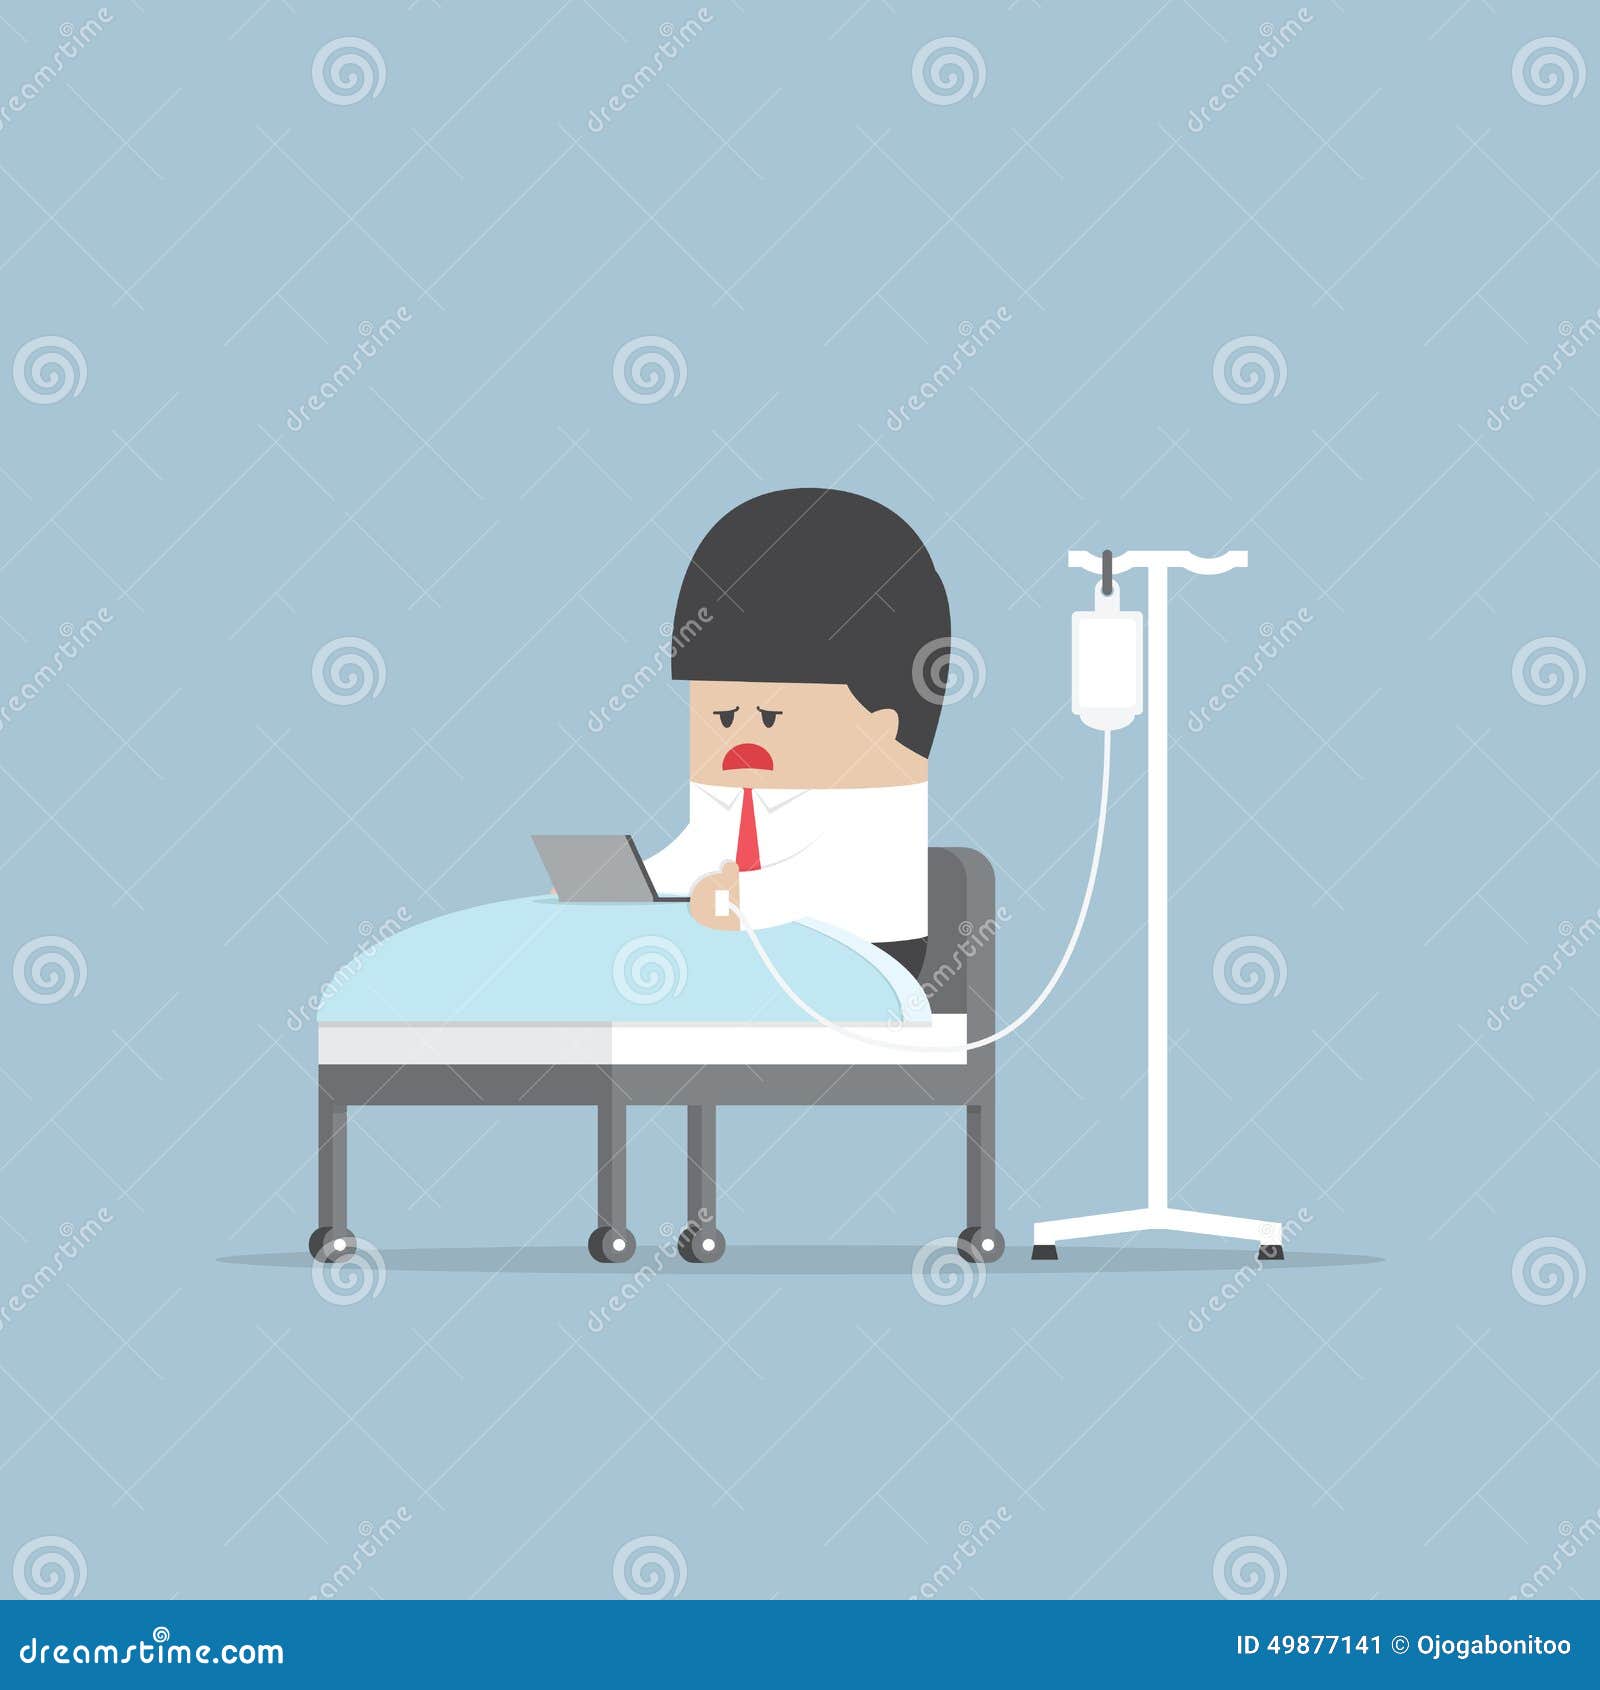 Sick Businessman Working Hard In Hospital Bed Illustration 49877141 -  Megapixl